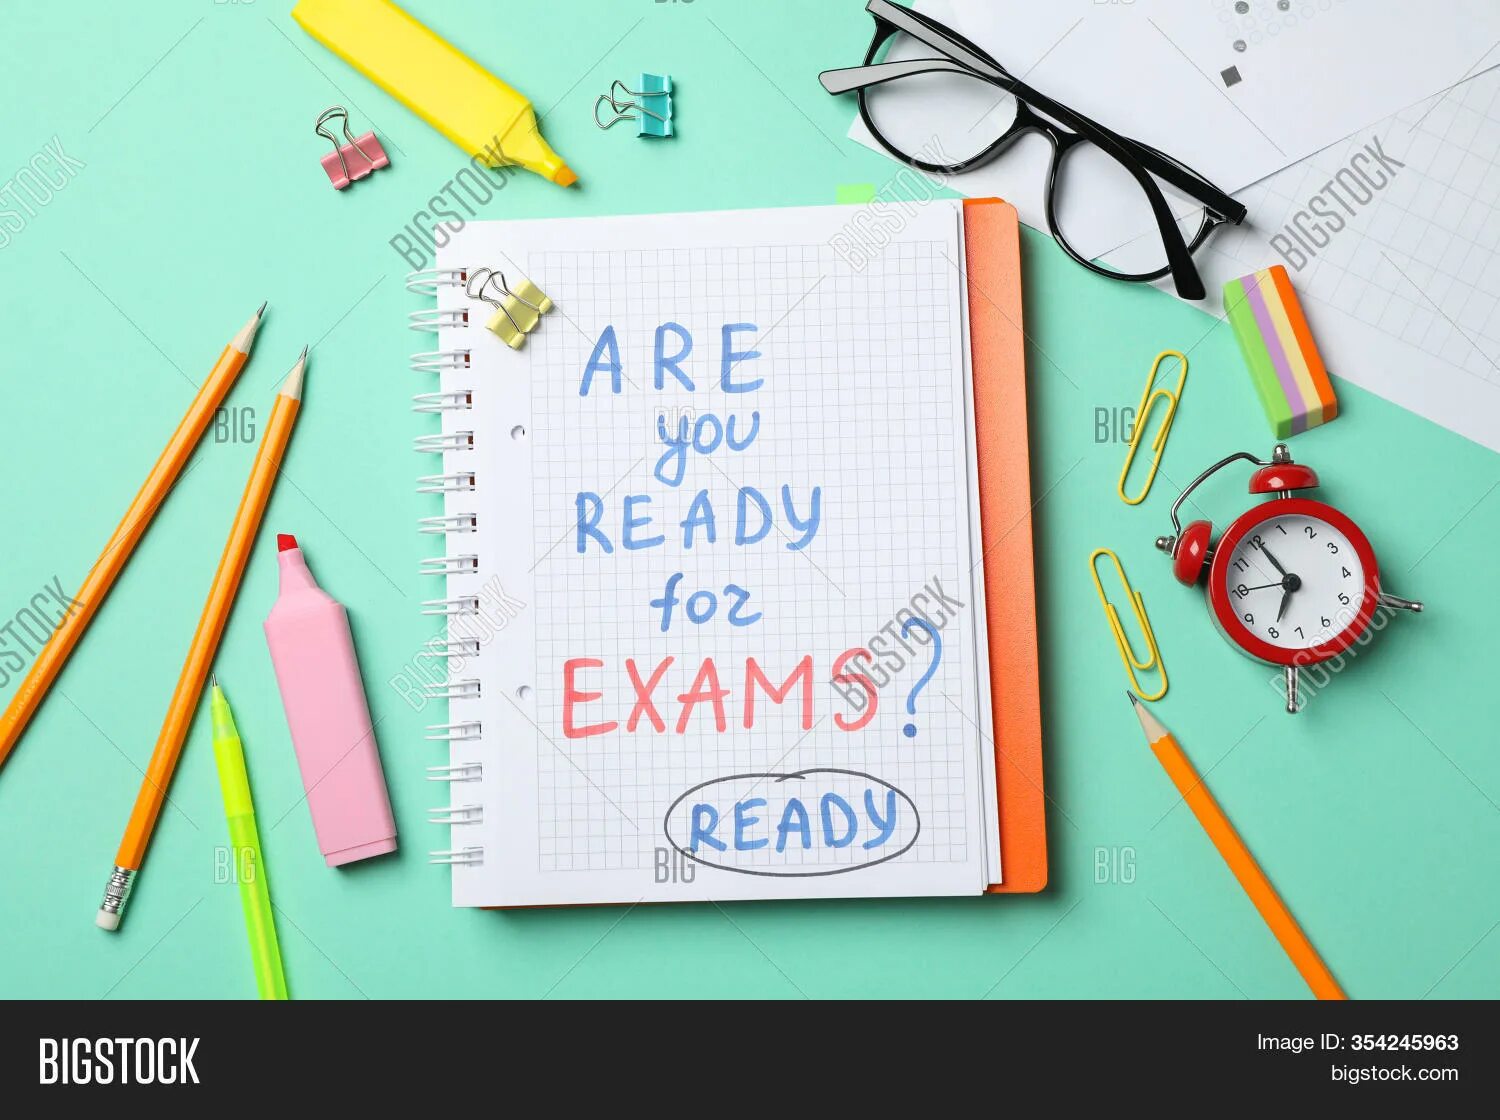 Ready for exams. Are you ready for Exams. Are you ready for Exams картинки. Are you ready for Exams на белом фоне картинки. Are you ready.